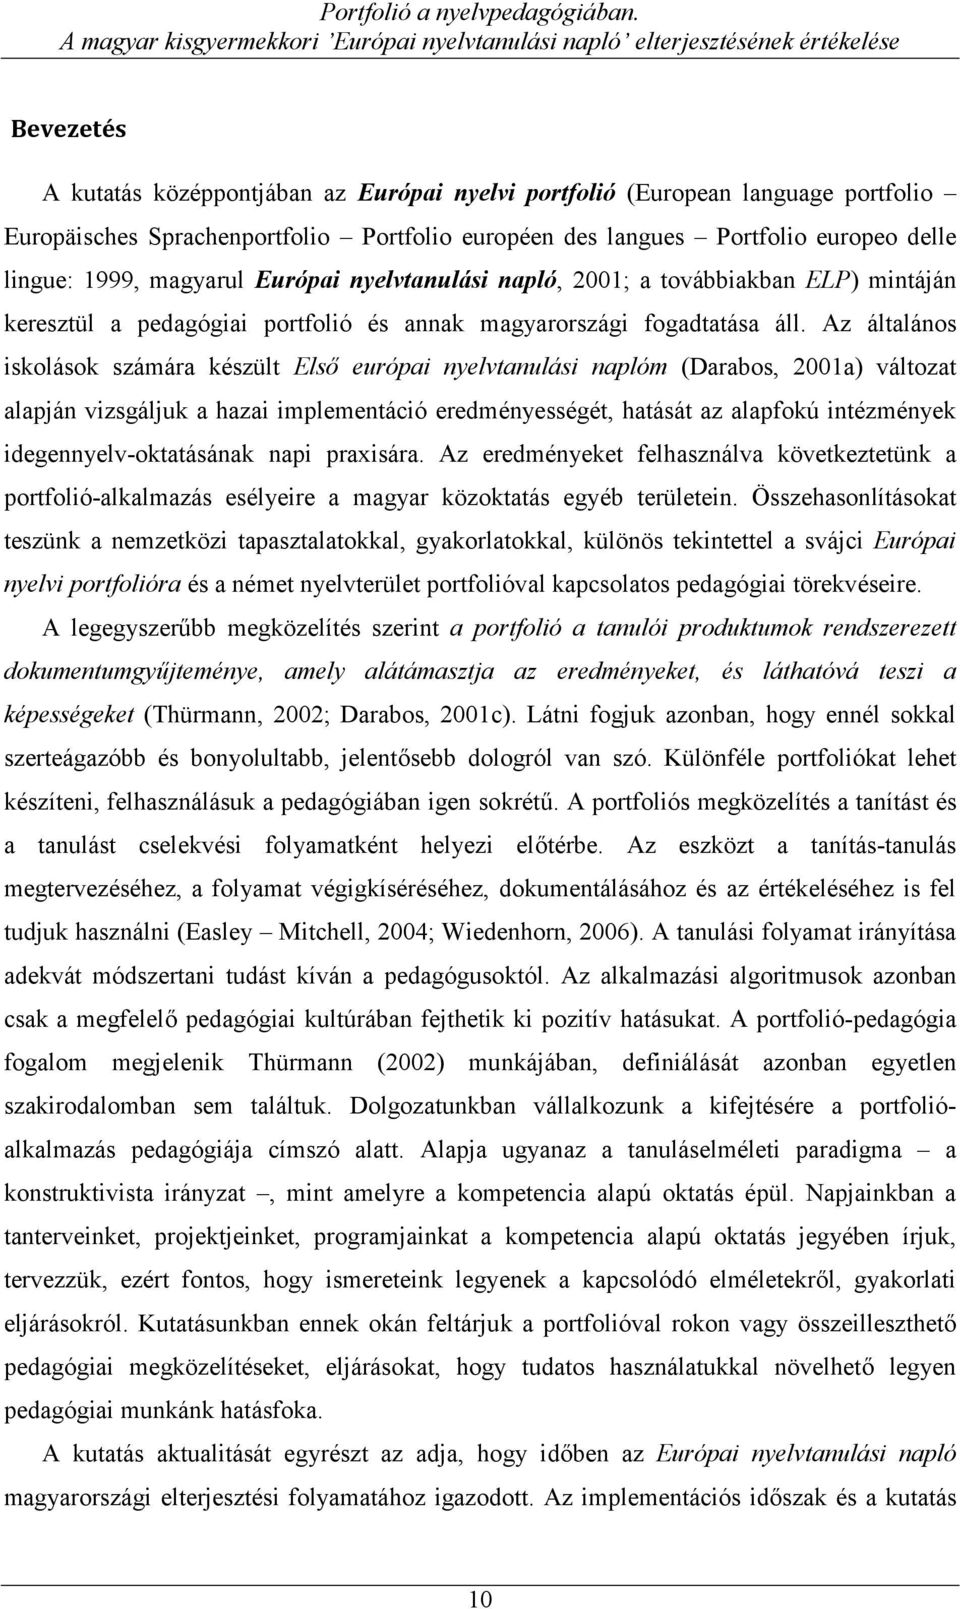 Sprachenportfolio Portfolio européen des langues Portfolio europeo delle lingue: 1999, magyarul Európai nyelvtanulási napló, 2001; a továbbiakban ELP) mintáján keresztül a pedagógiai portfolió és